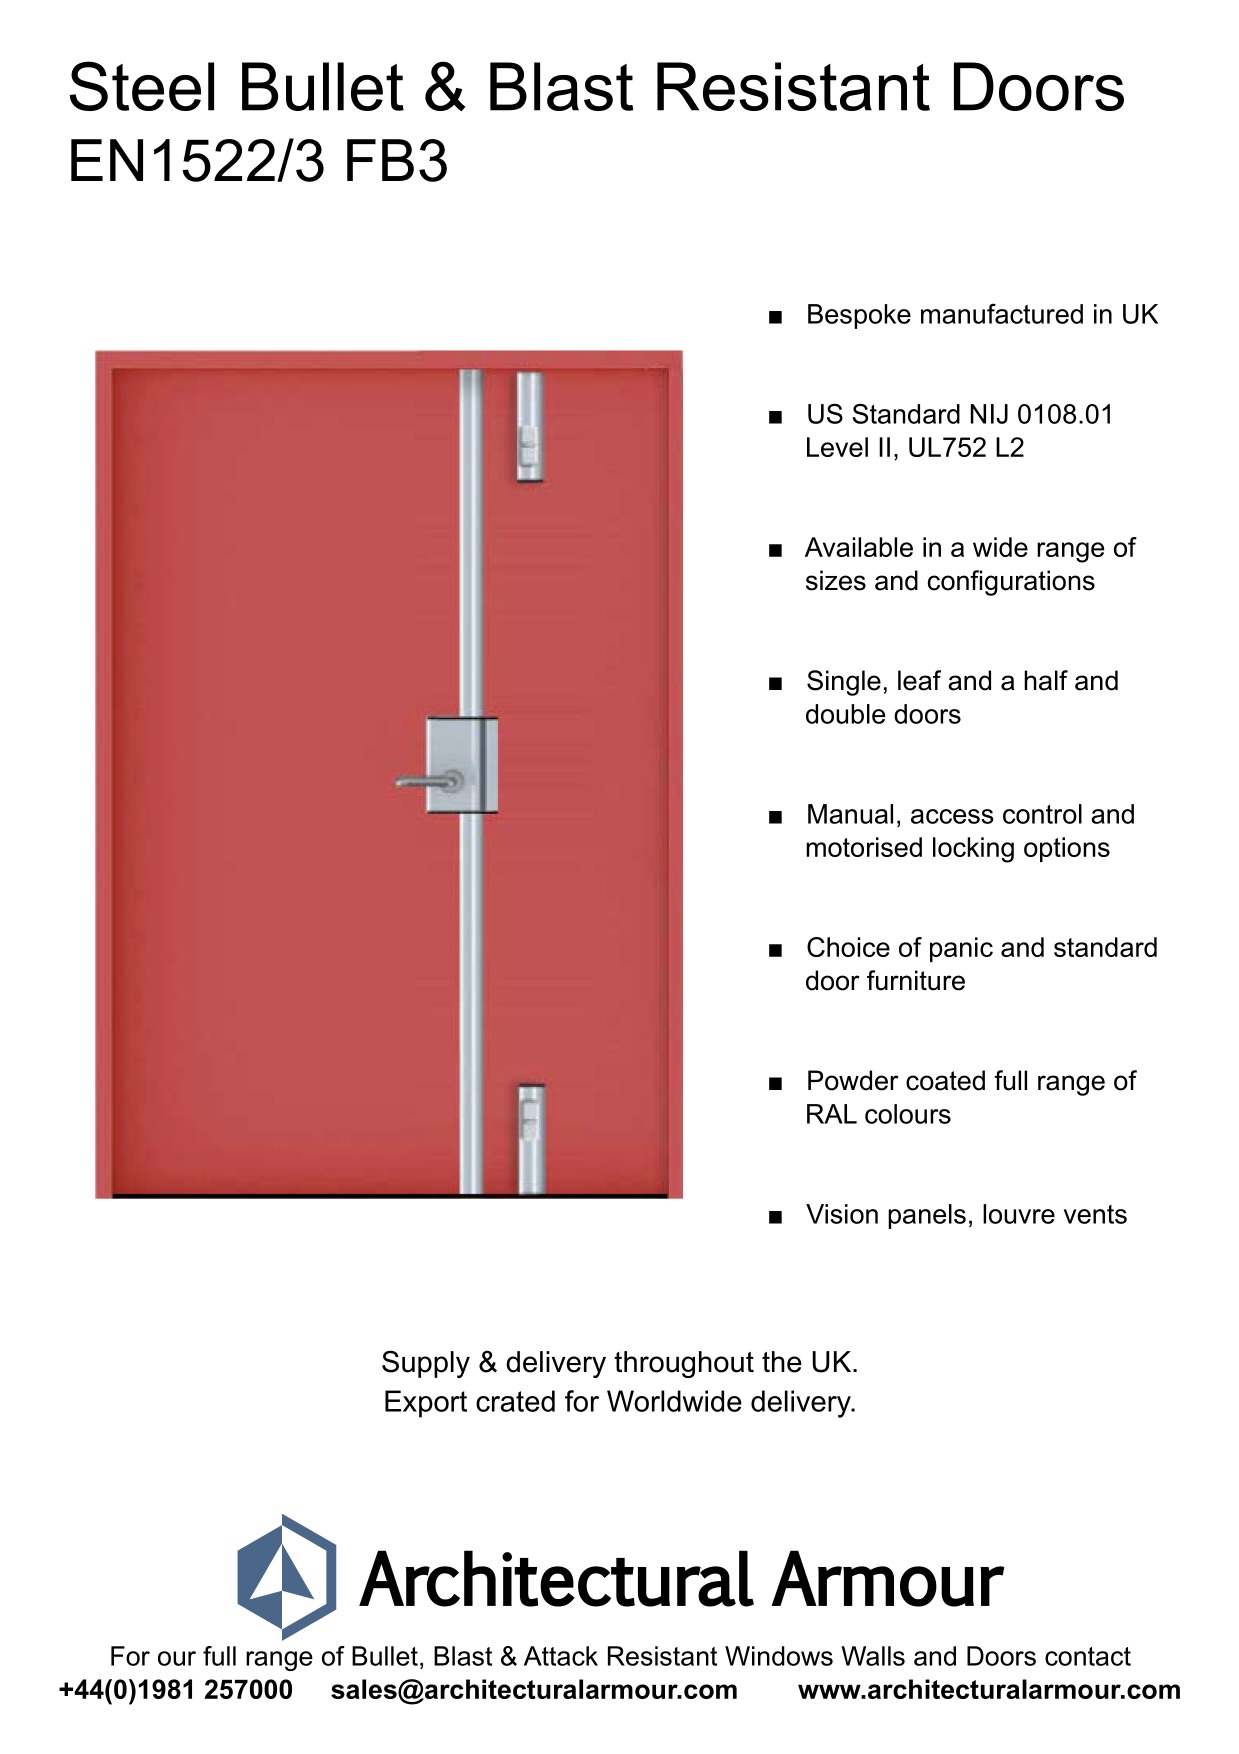 Blast-and-Ballistic-Resistant-metal-Doors-EN1522-3-FB3